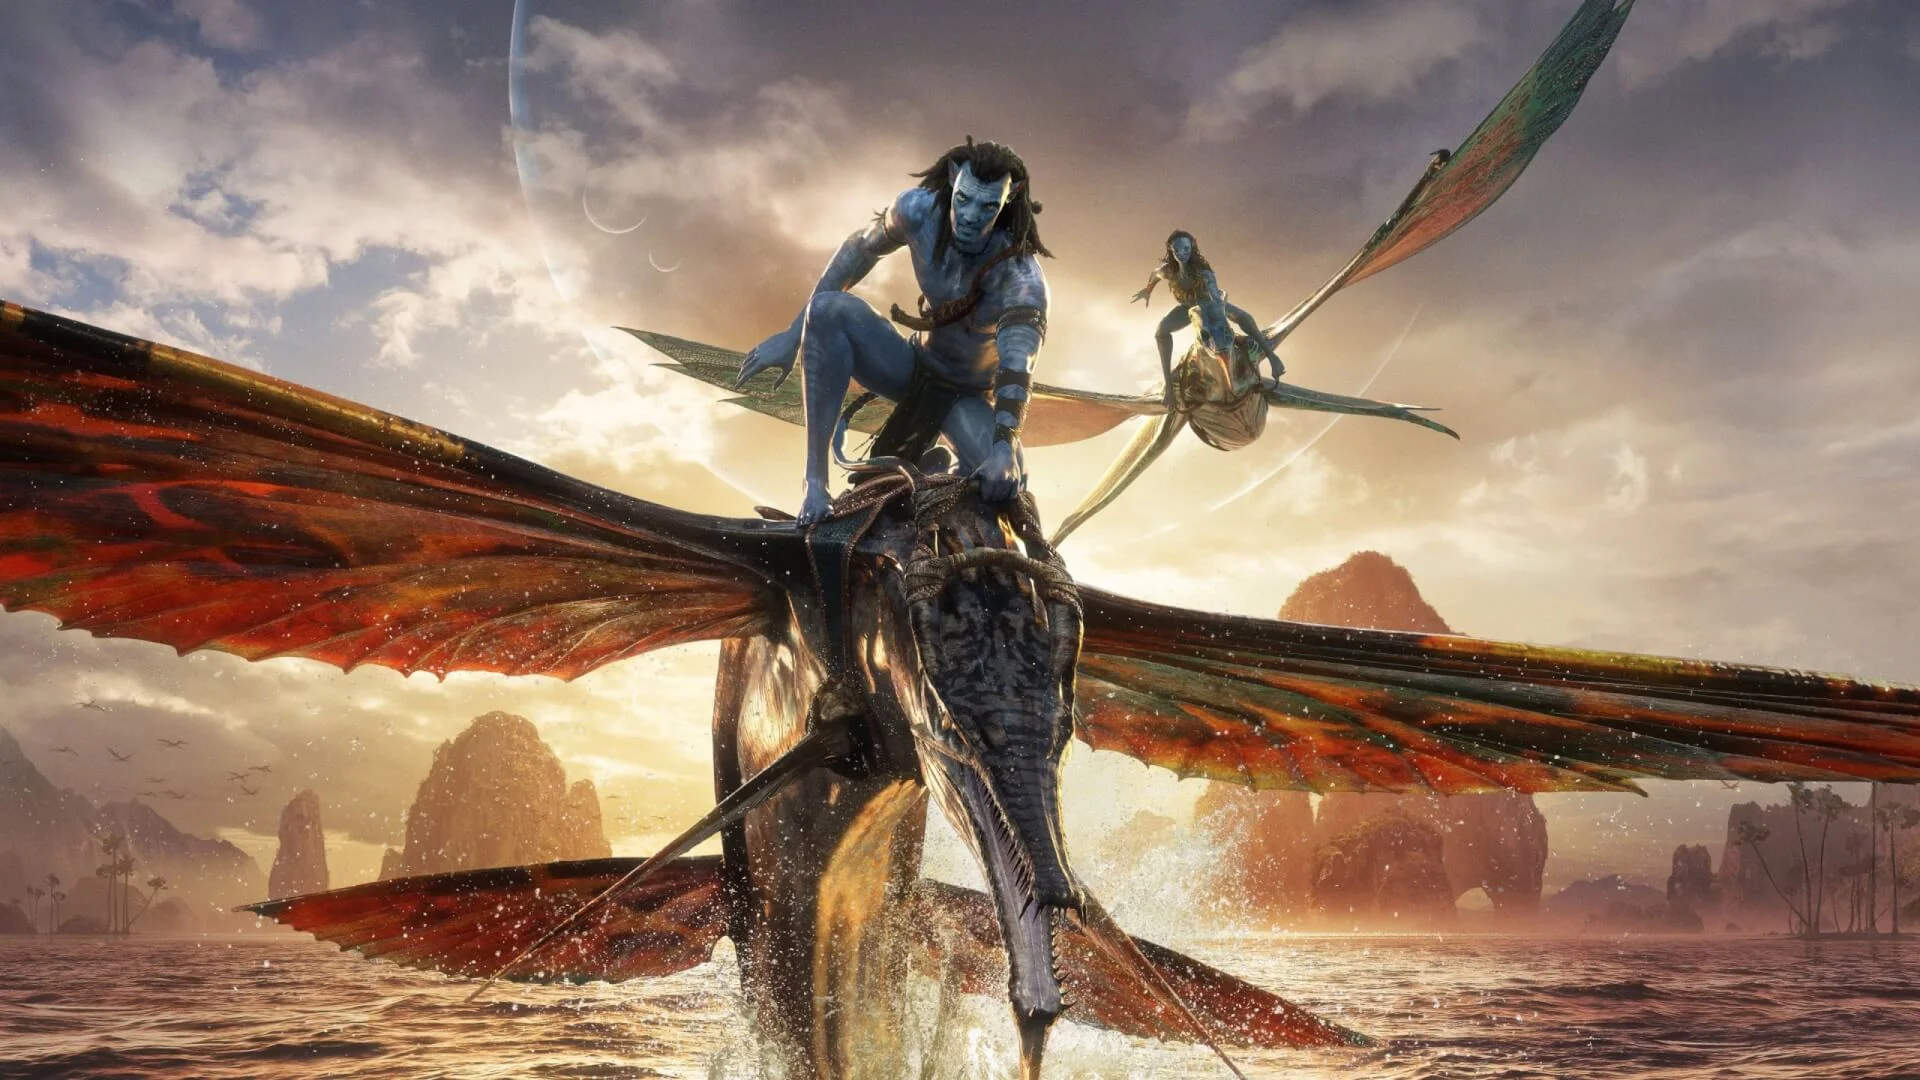 Kiderült, hogy az Avatar: A víz útja mikor fog megjelenni digitális formátumban